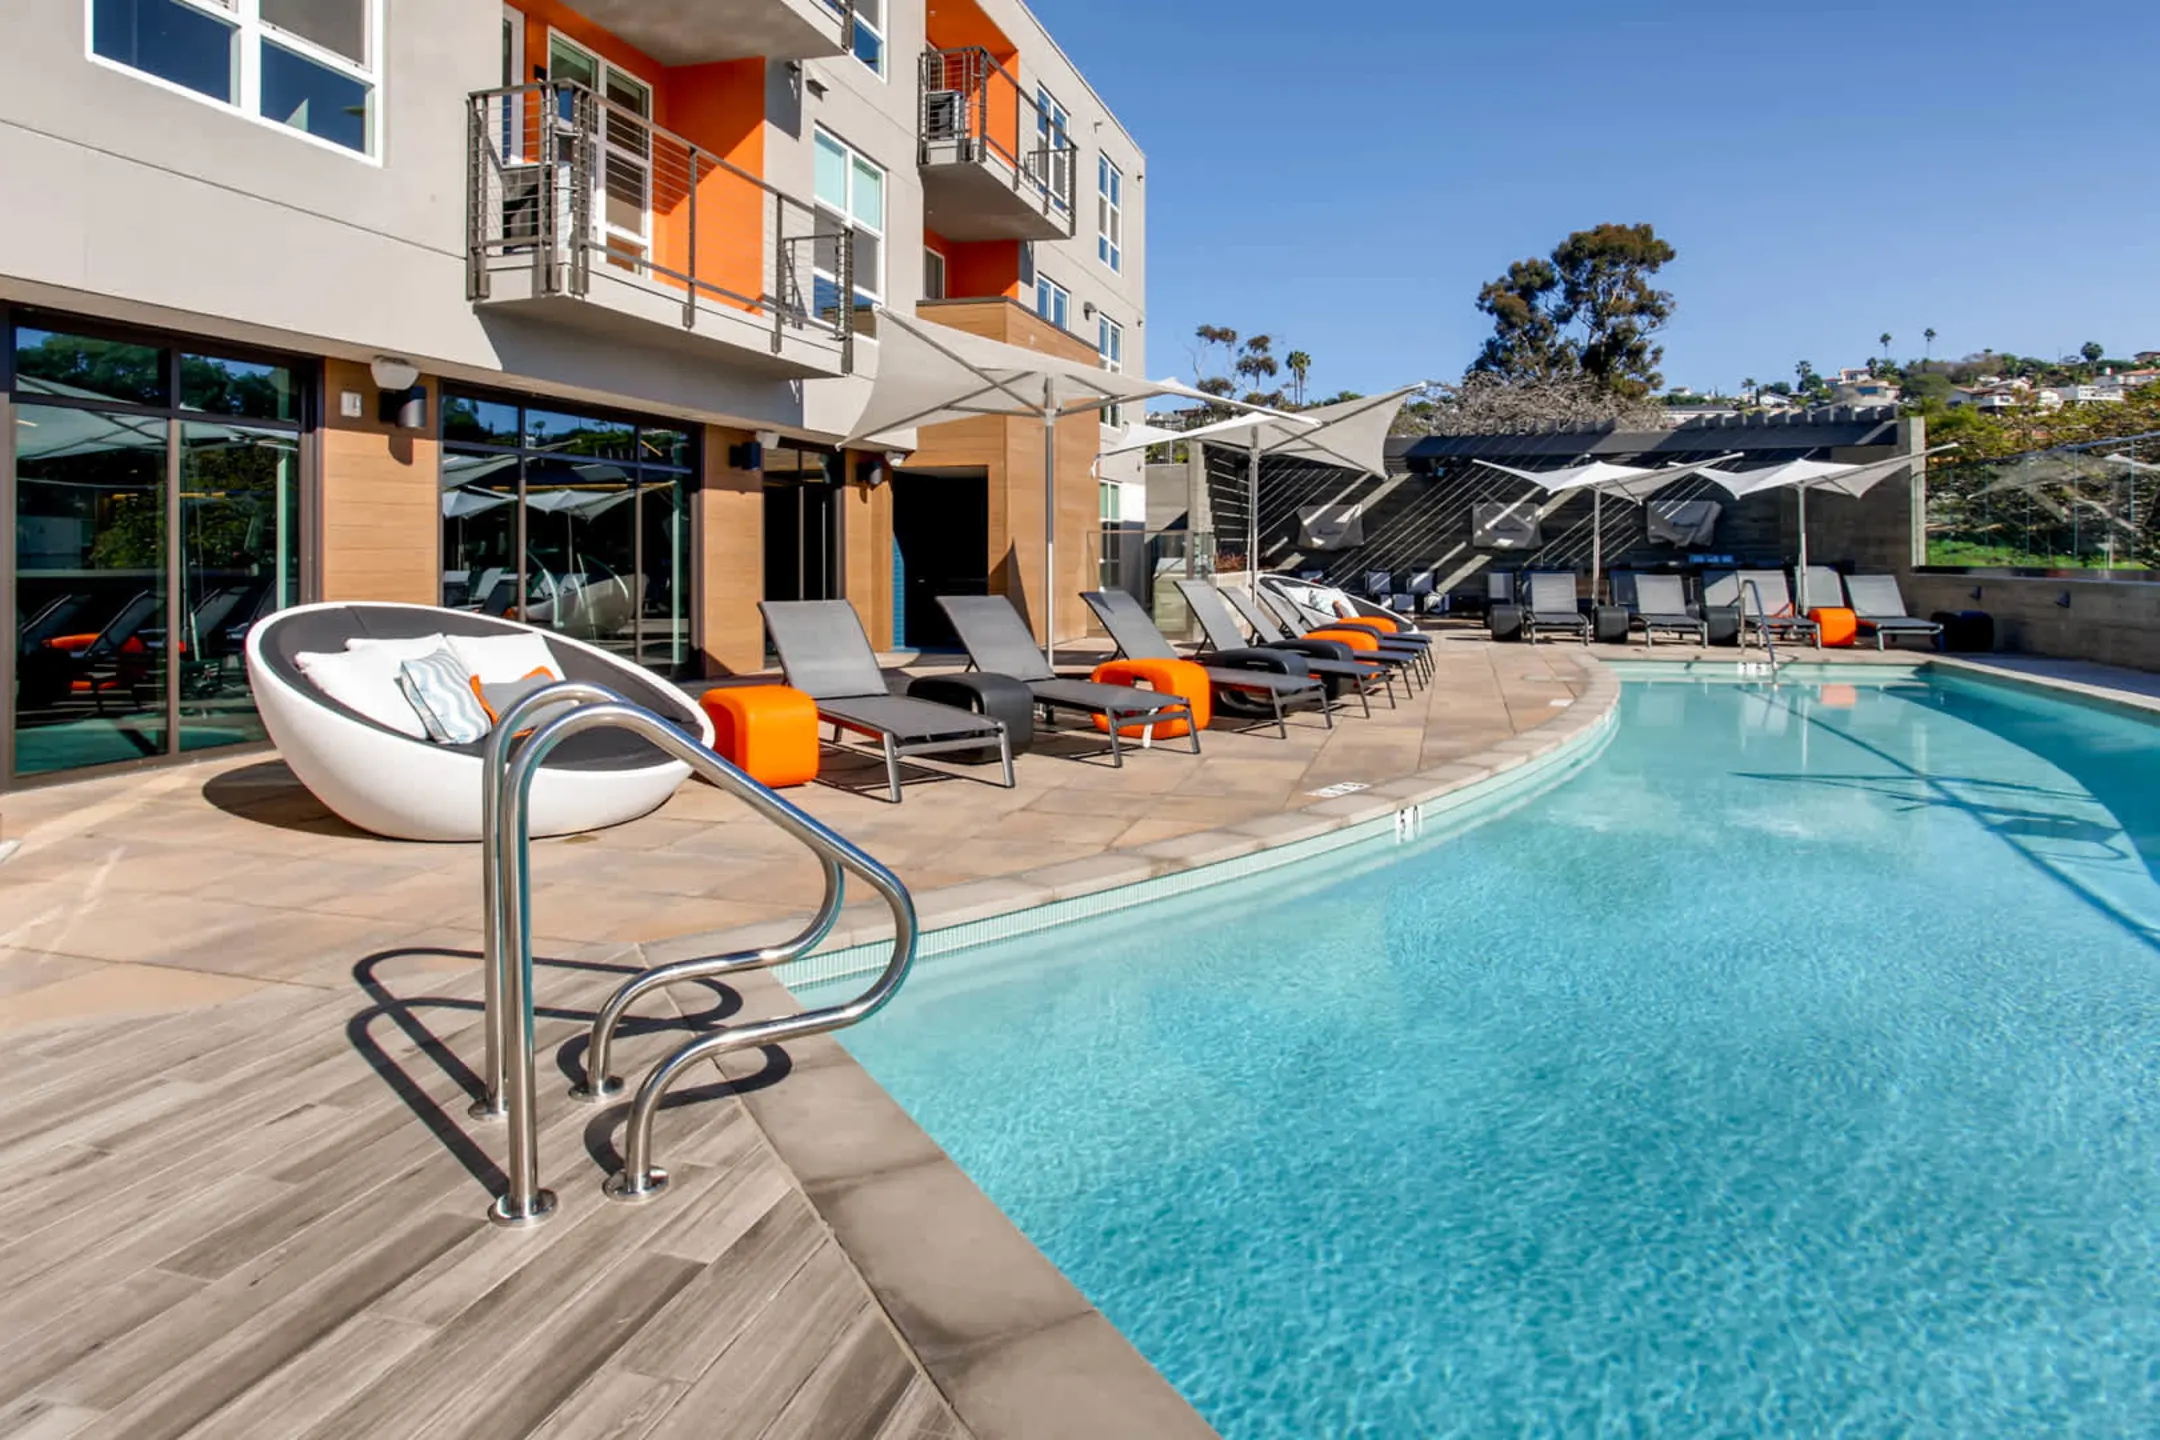 Pool - Mara Pacific Beach Apartments - San Diego, CA